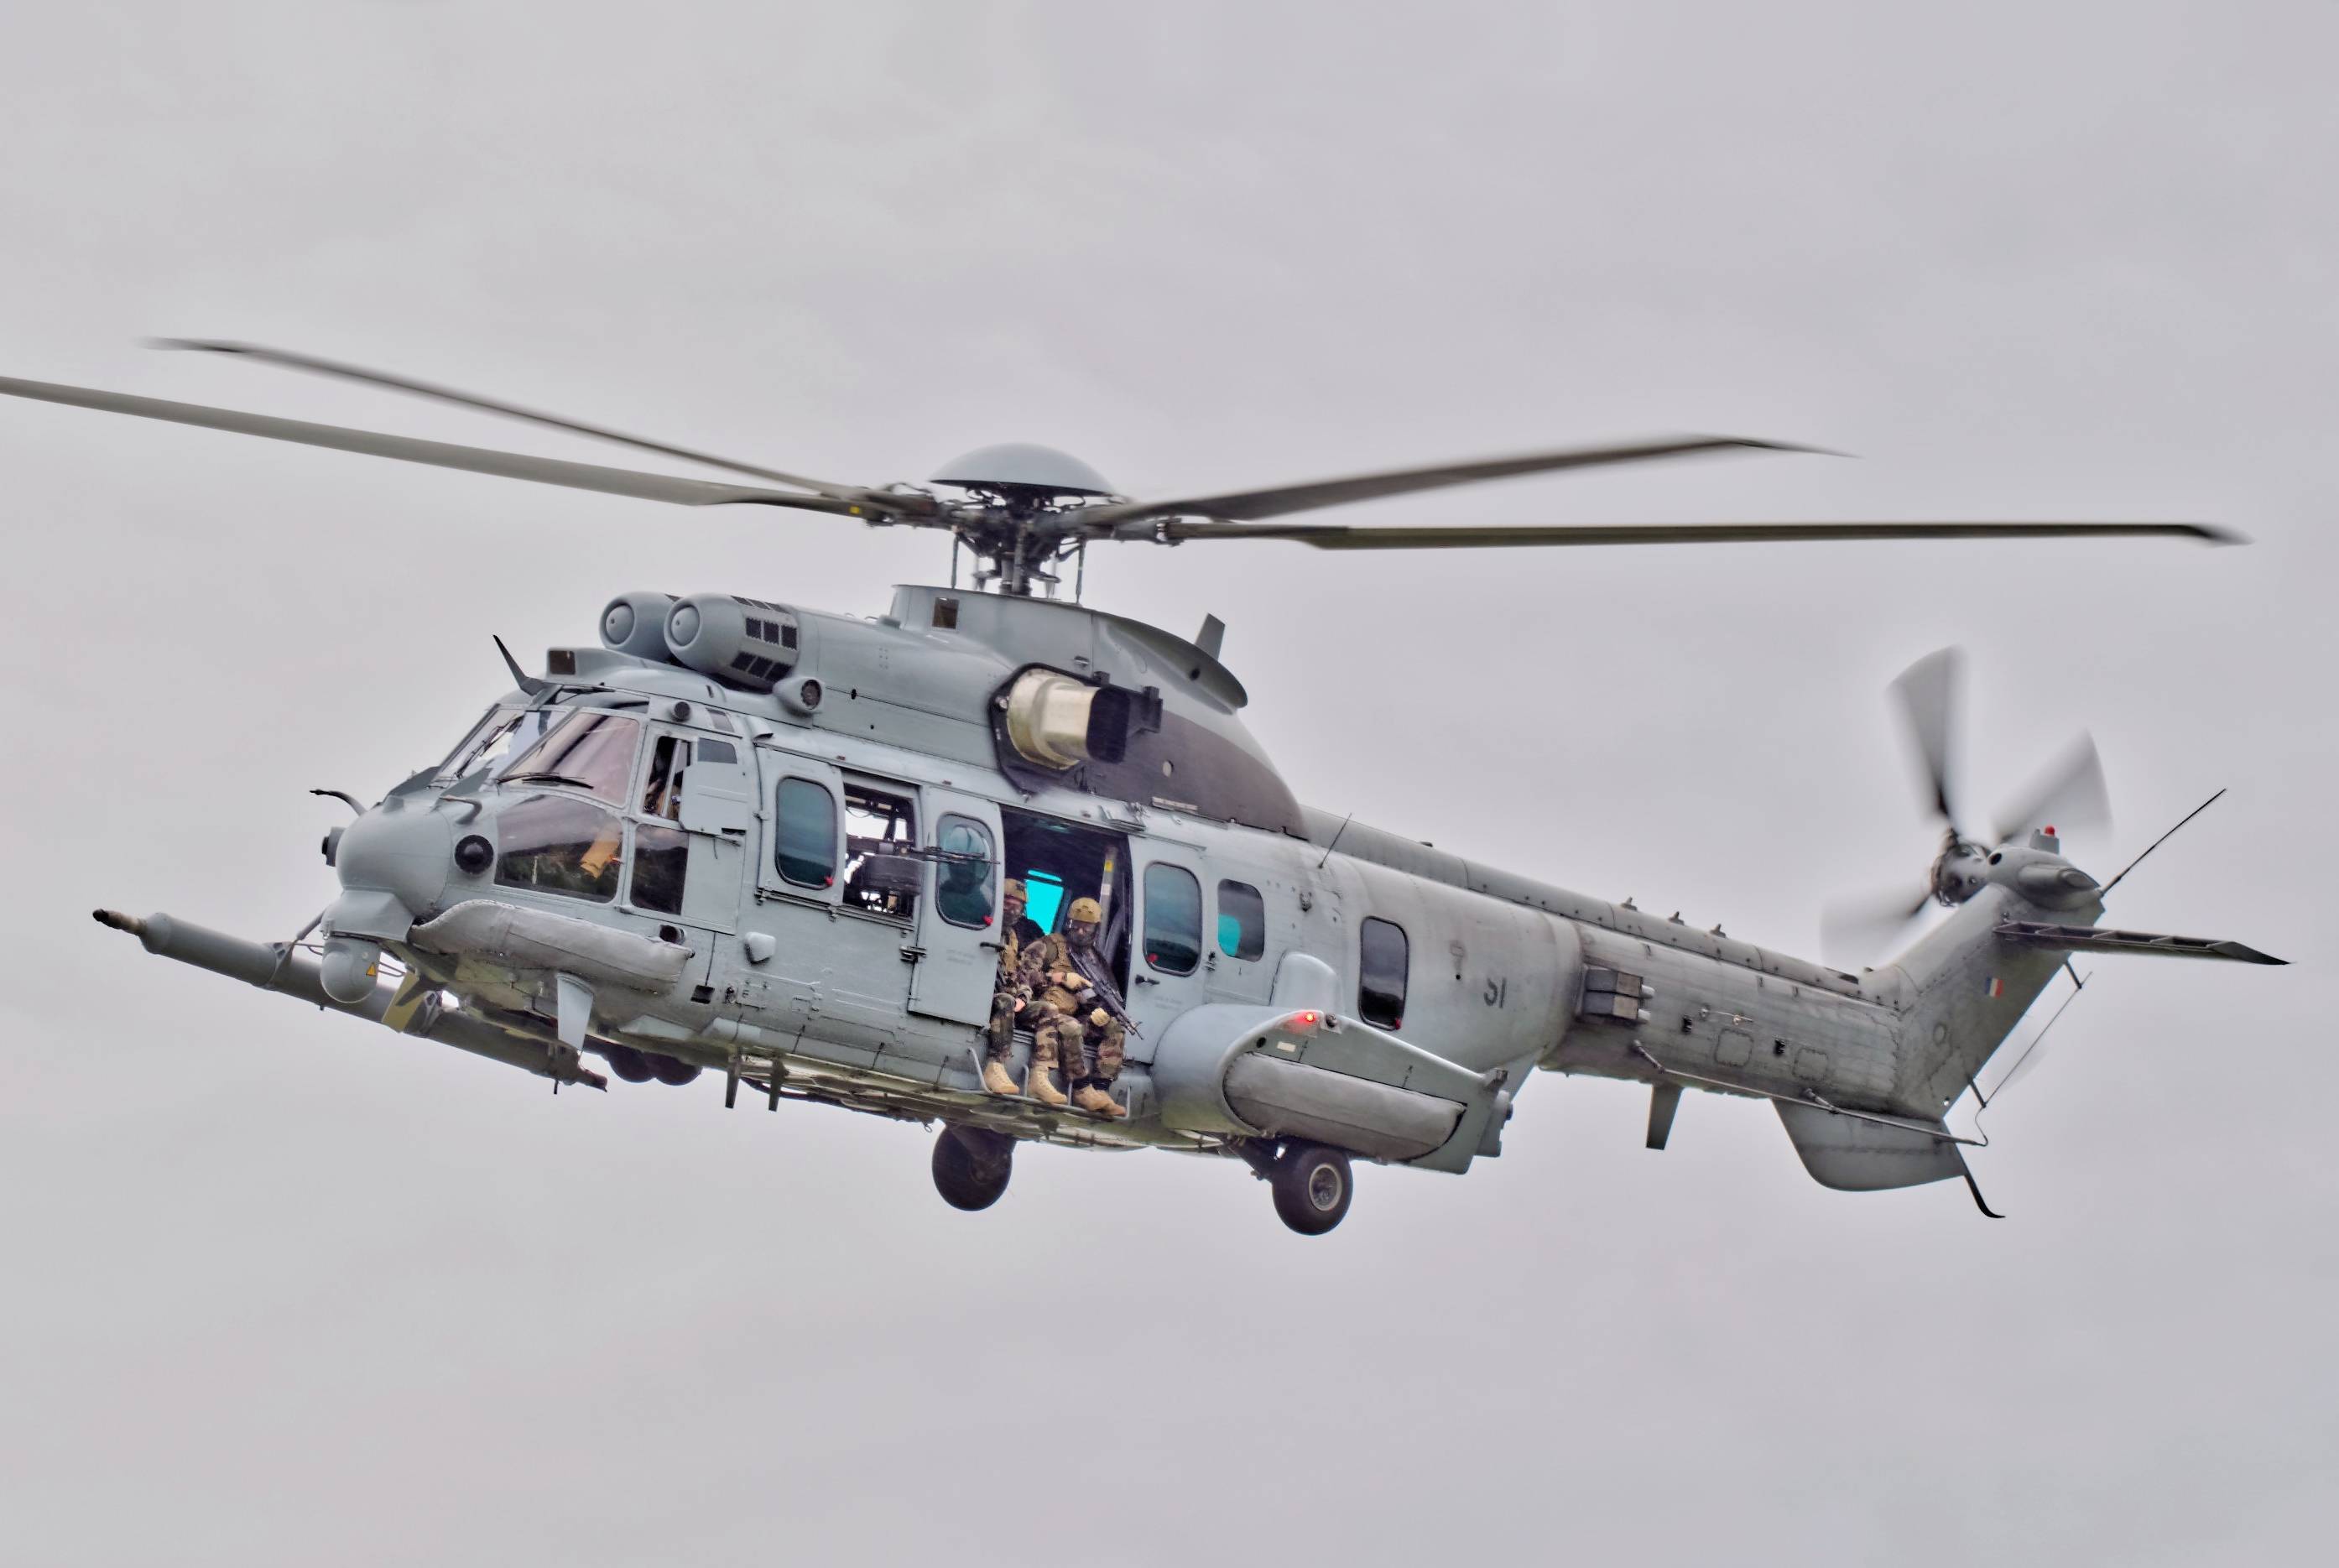 马里尼亚讷工厂的一次访问中宣布,将提供订购八架h225m直升机的订单